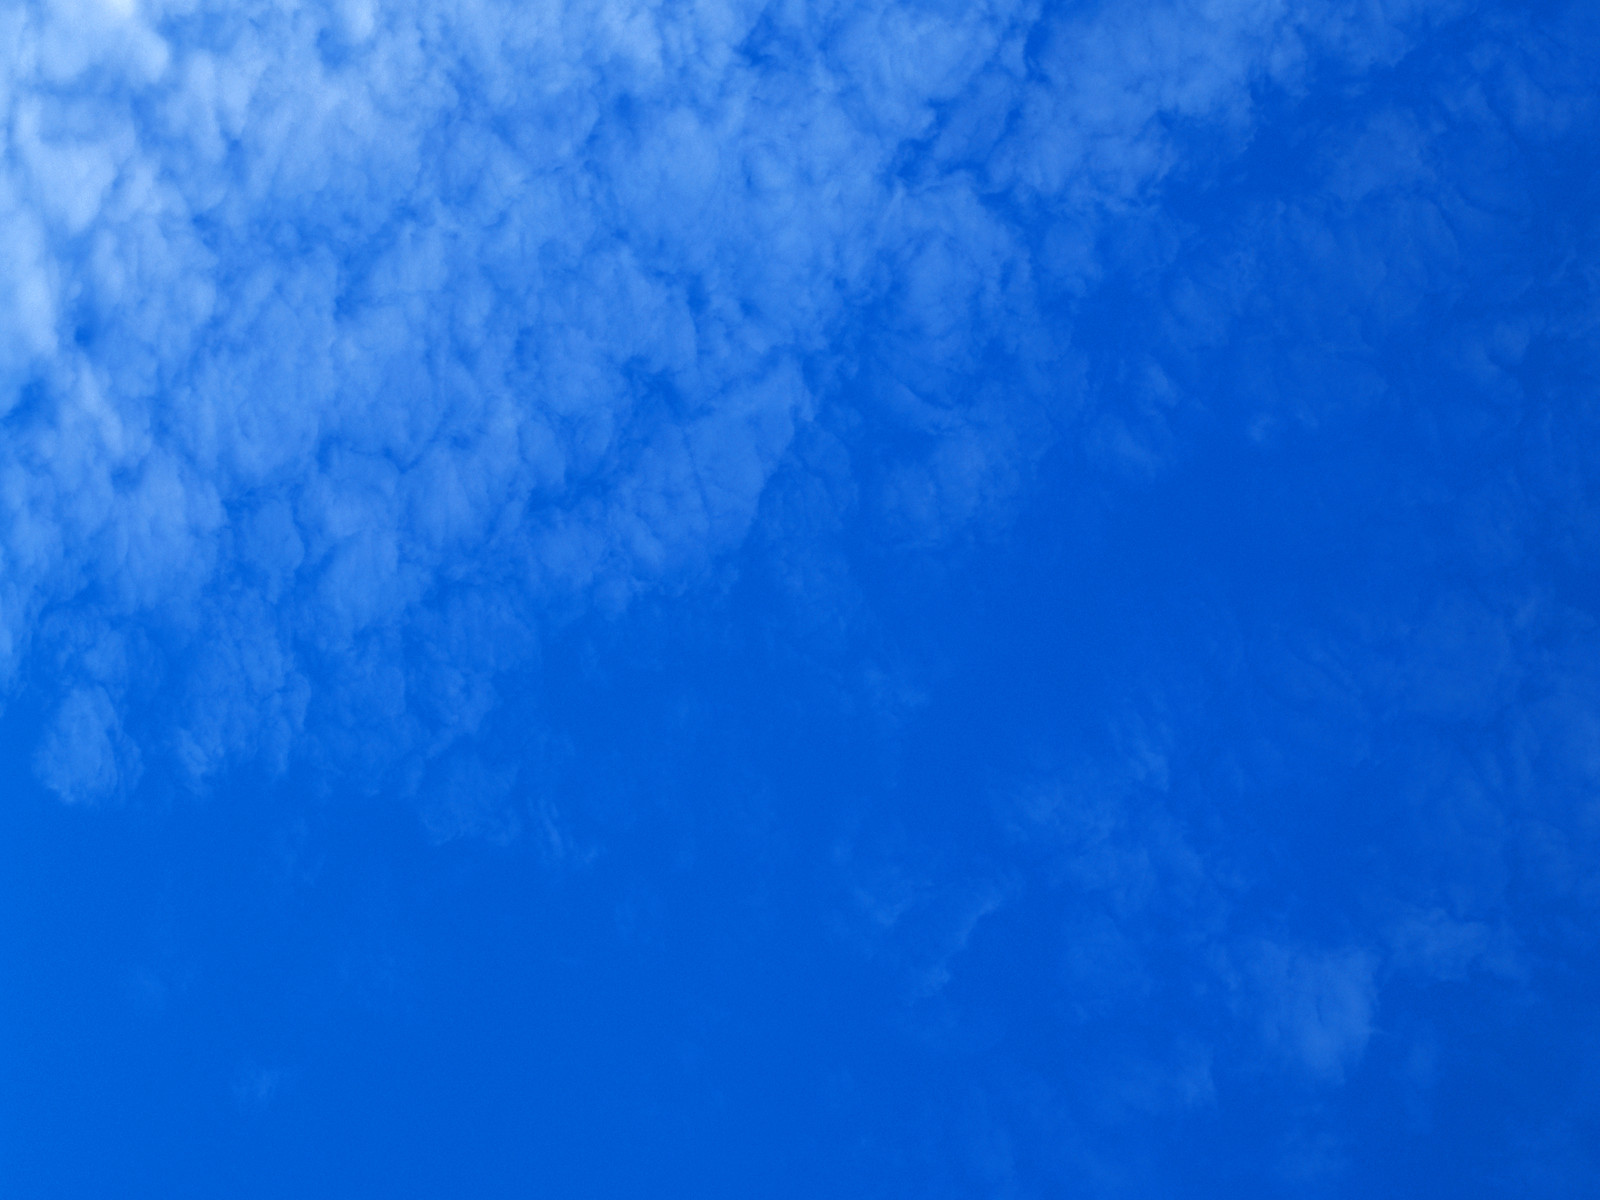 壁纸1600x1200 白云朵朵 蓝天白云壁纸壁纸 蔚蓝天空-蓝天白云壁纸壁纸 蔚蓝天空-蓝天白云壁纸图片 蔚蓝天空-蓝天白云壁纸素材 风景壁纸 风景图库 风景图片素材桌面壁纸